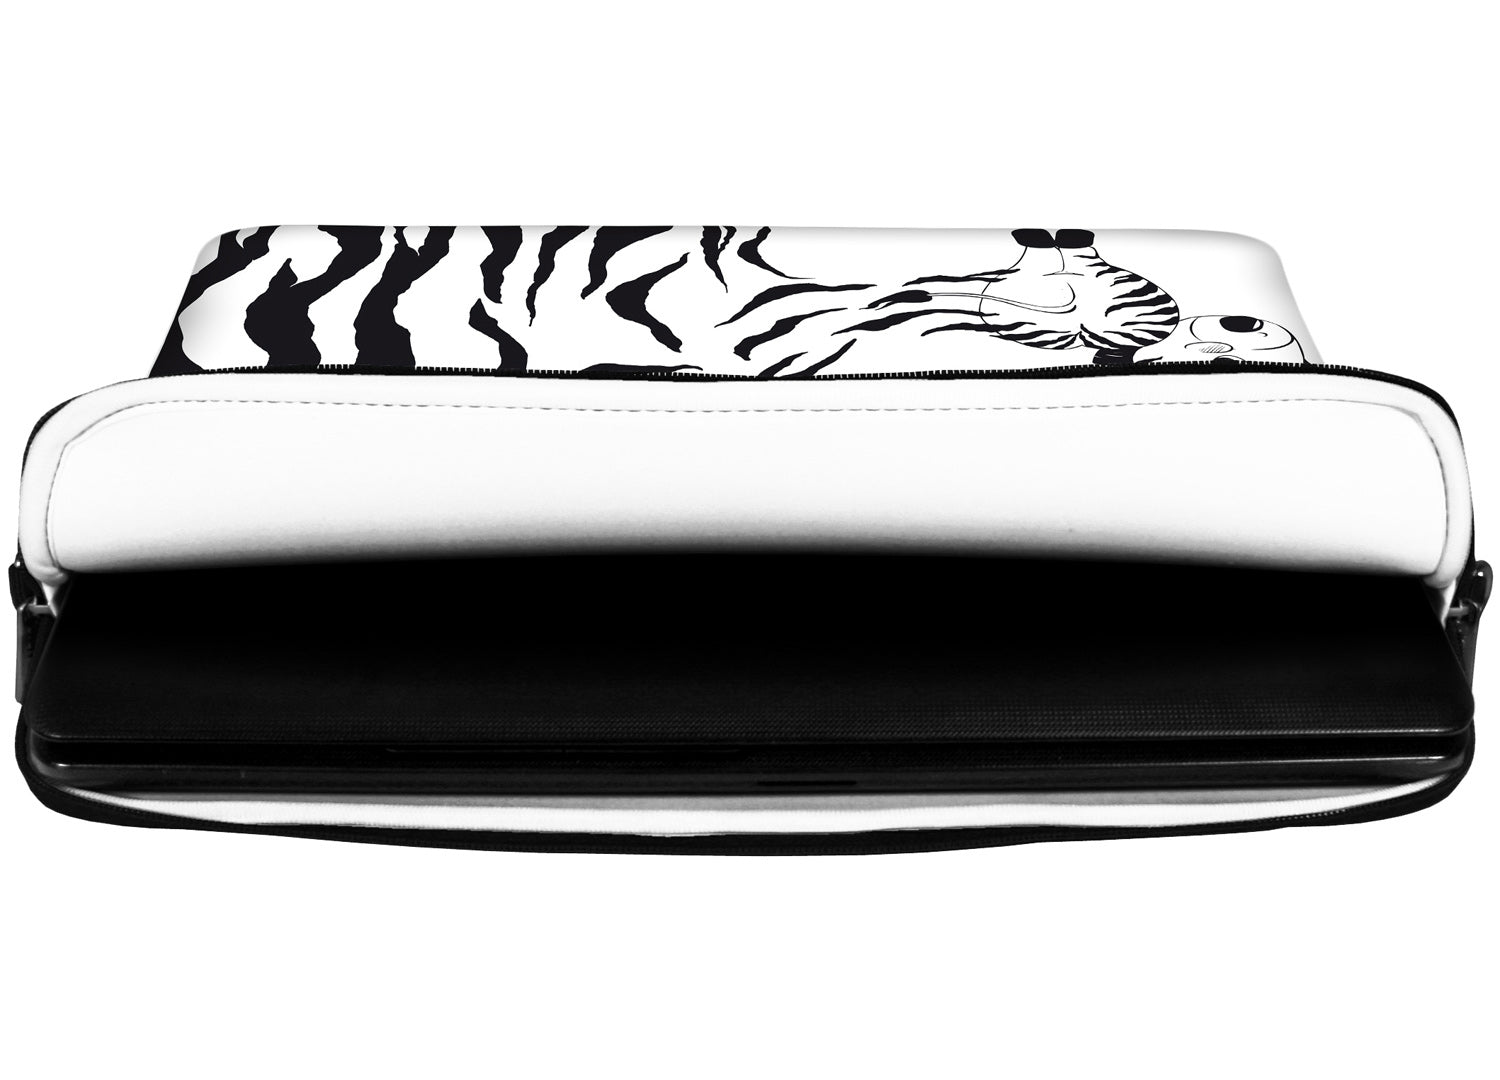 Innenansicht mit Schutzlippen der LS111 Zebra Designer Laptop Tasche in weiß aus wasserabweisendem Neopren